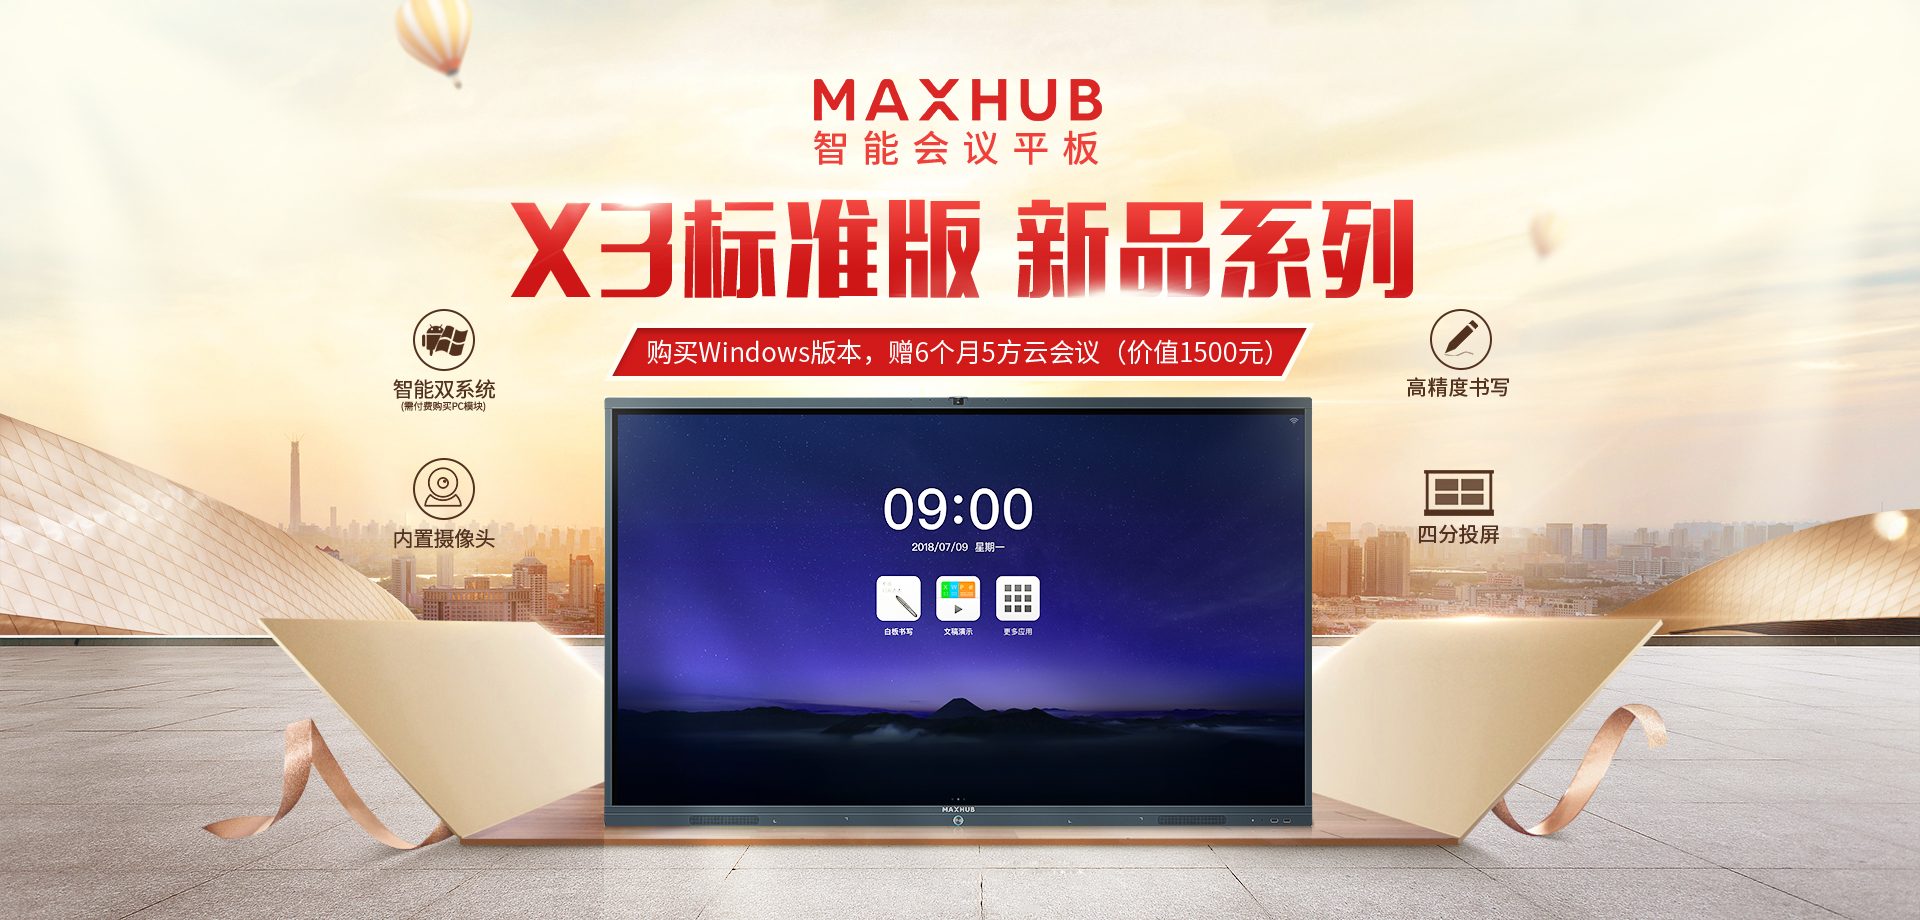 MAXHUB X3标准版